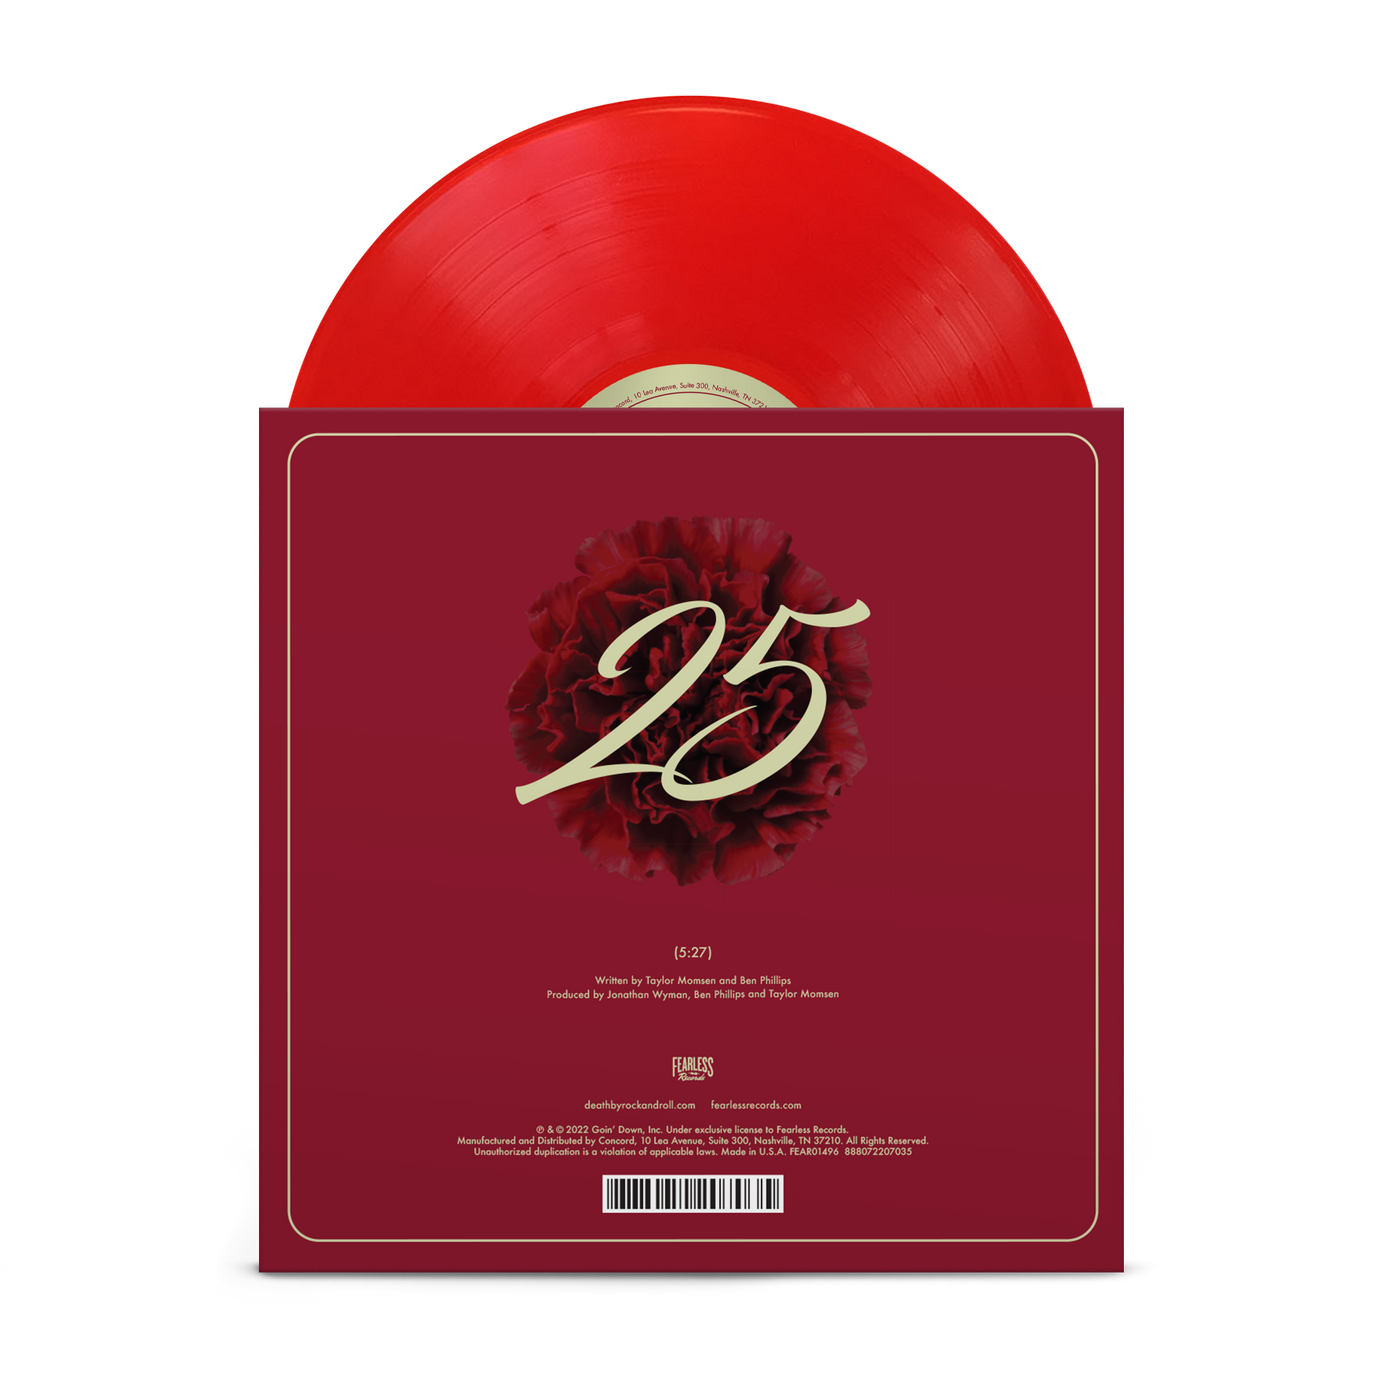 "25" Translucent Red 7"